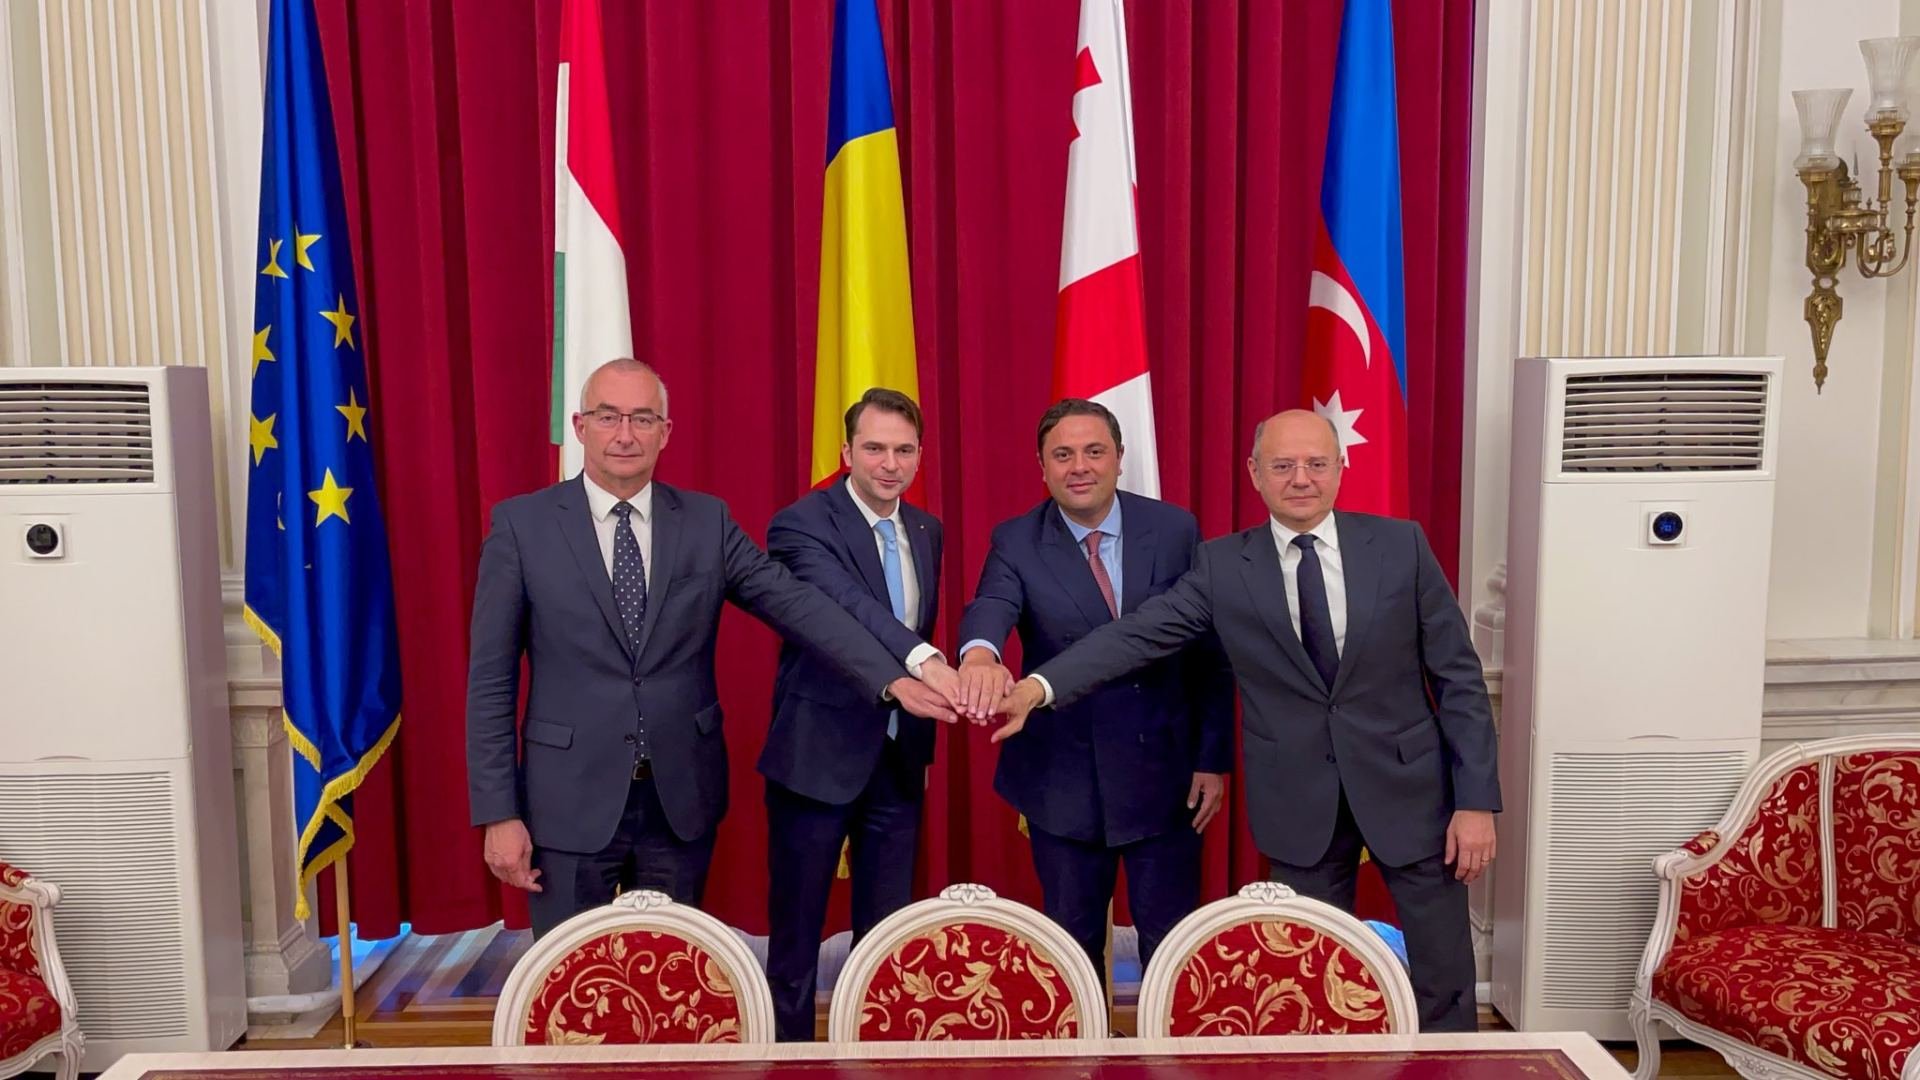 Azərbaycan yaşıl enerjinin Avropaya ötürülməsi üçün Buxarestdə Anlaşma Memorandumu imzaladı